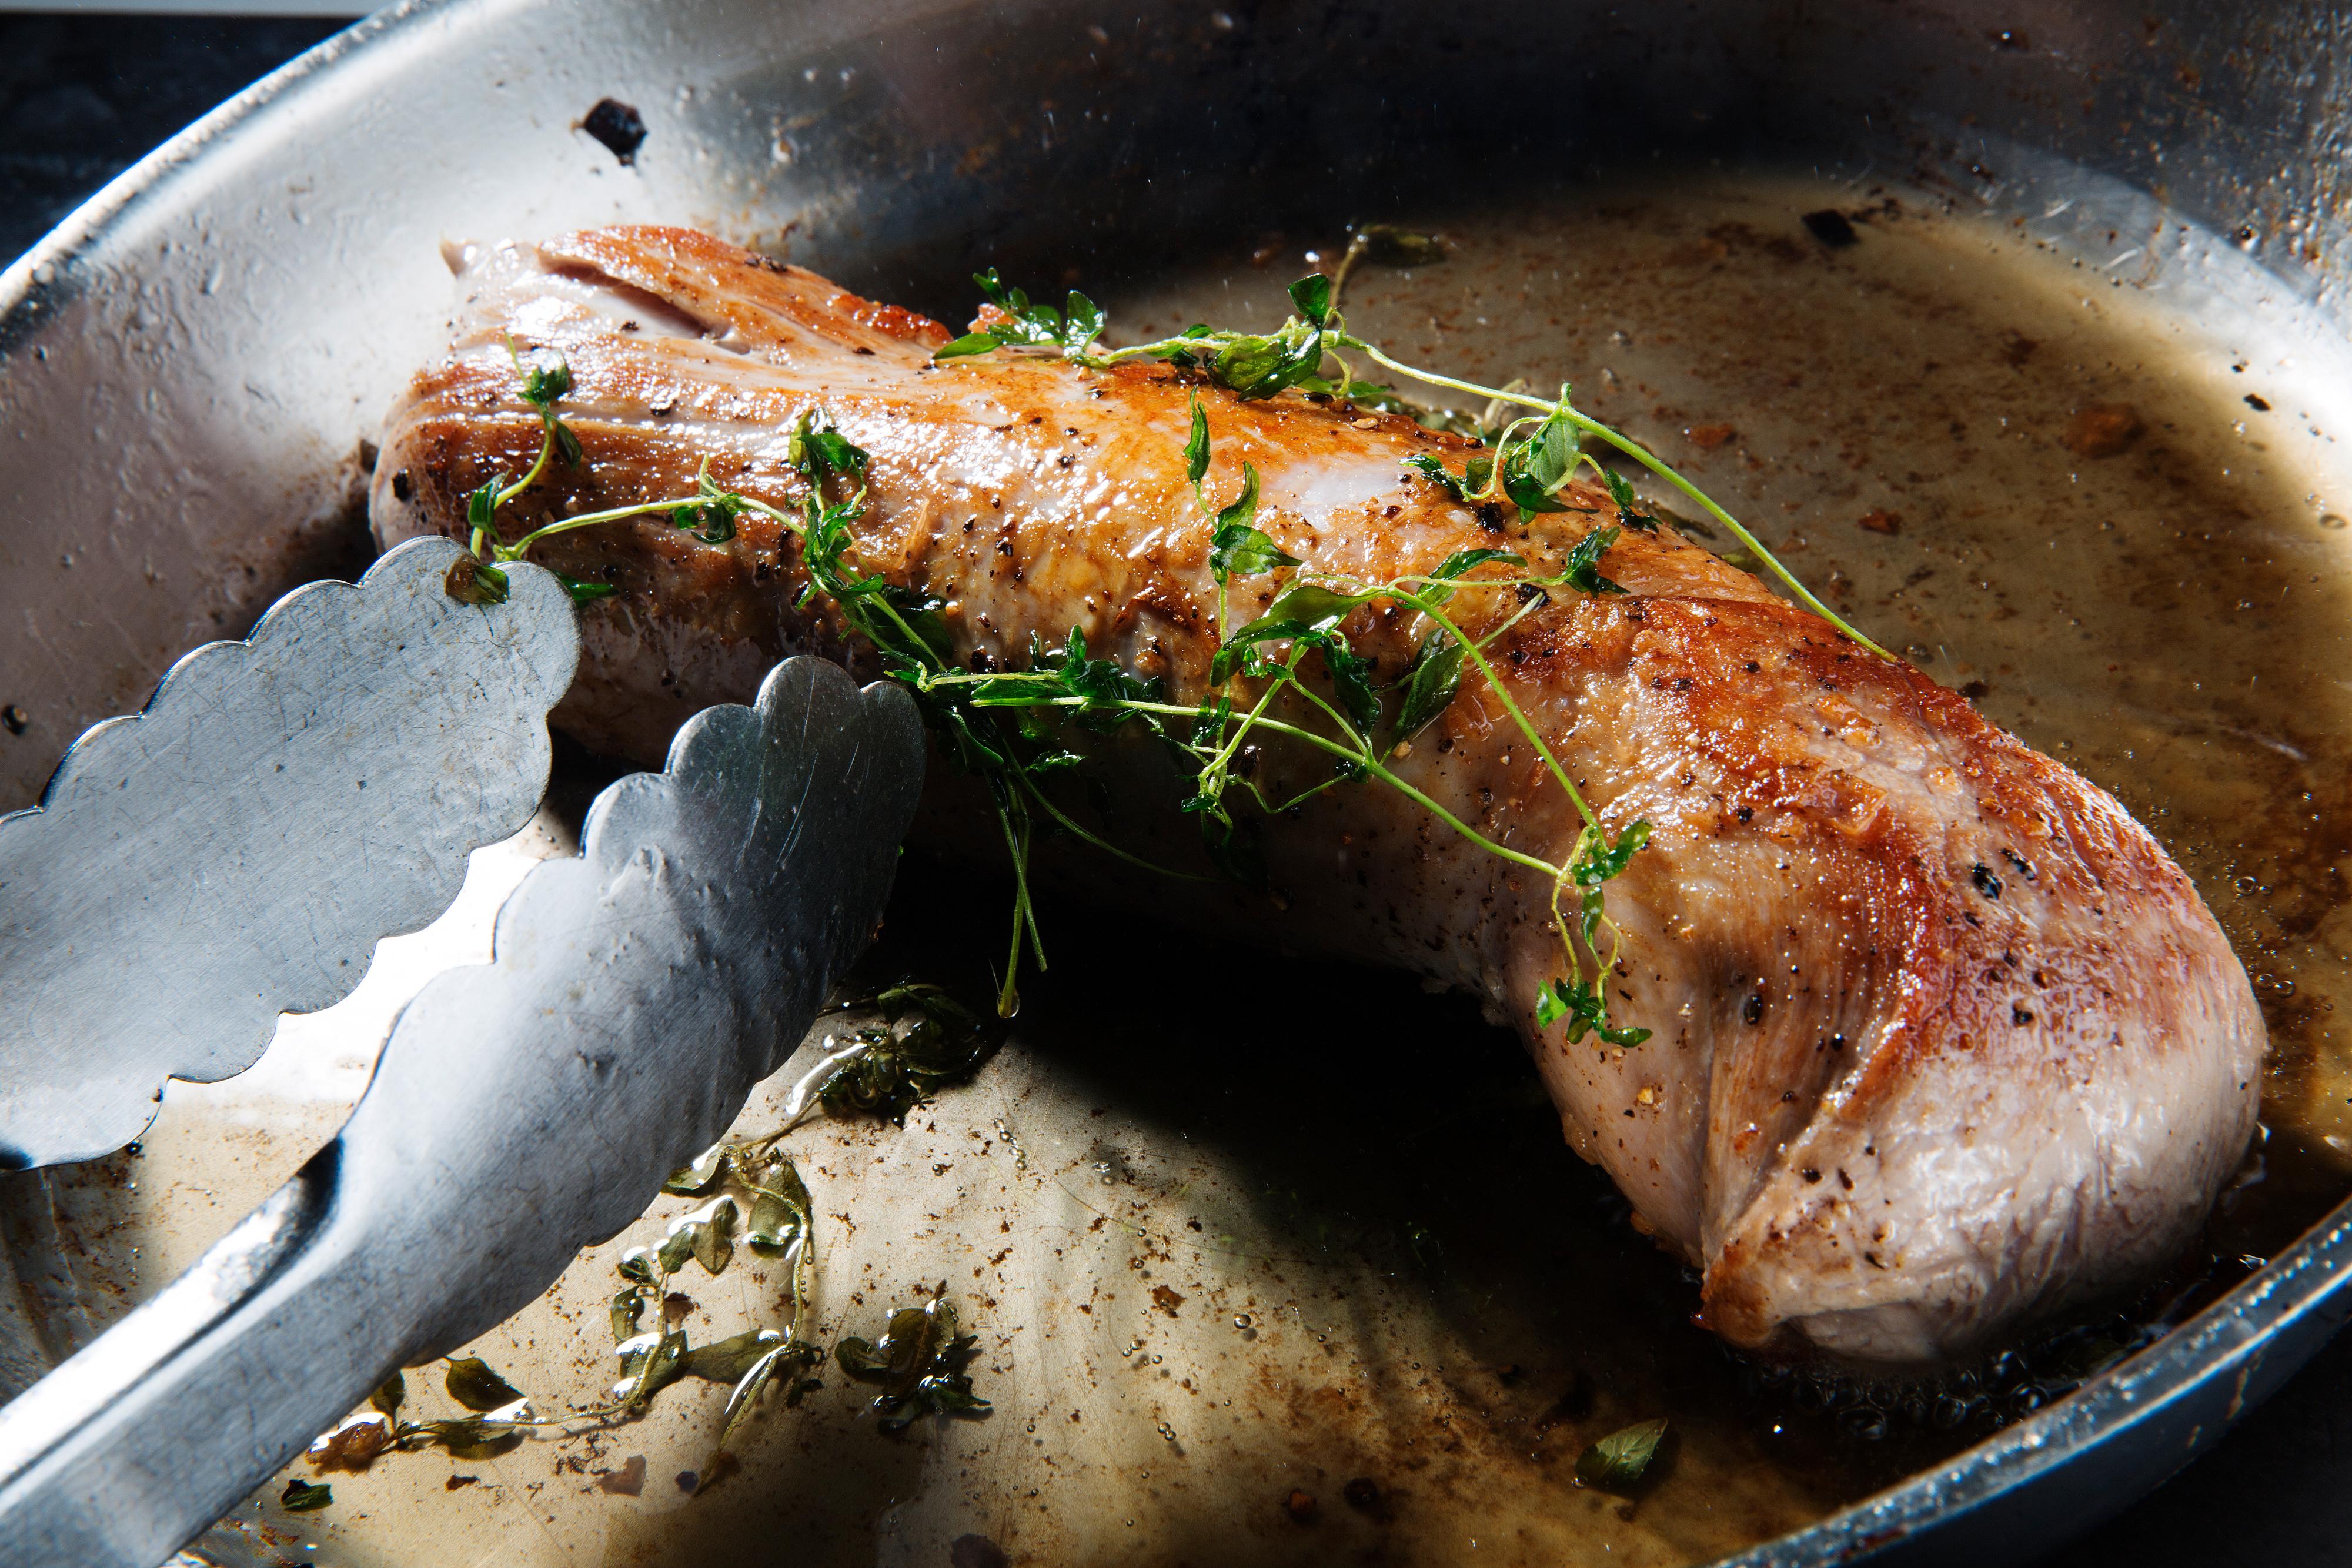 Salt og pepre svinefileten før den brunes godt på alle sider i pannen. Ha gjerne i noen timiankvaster.